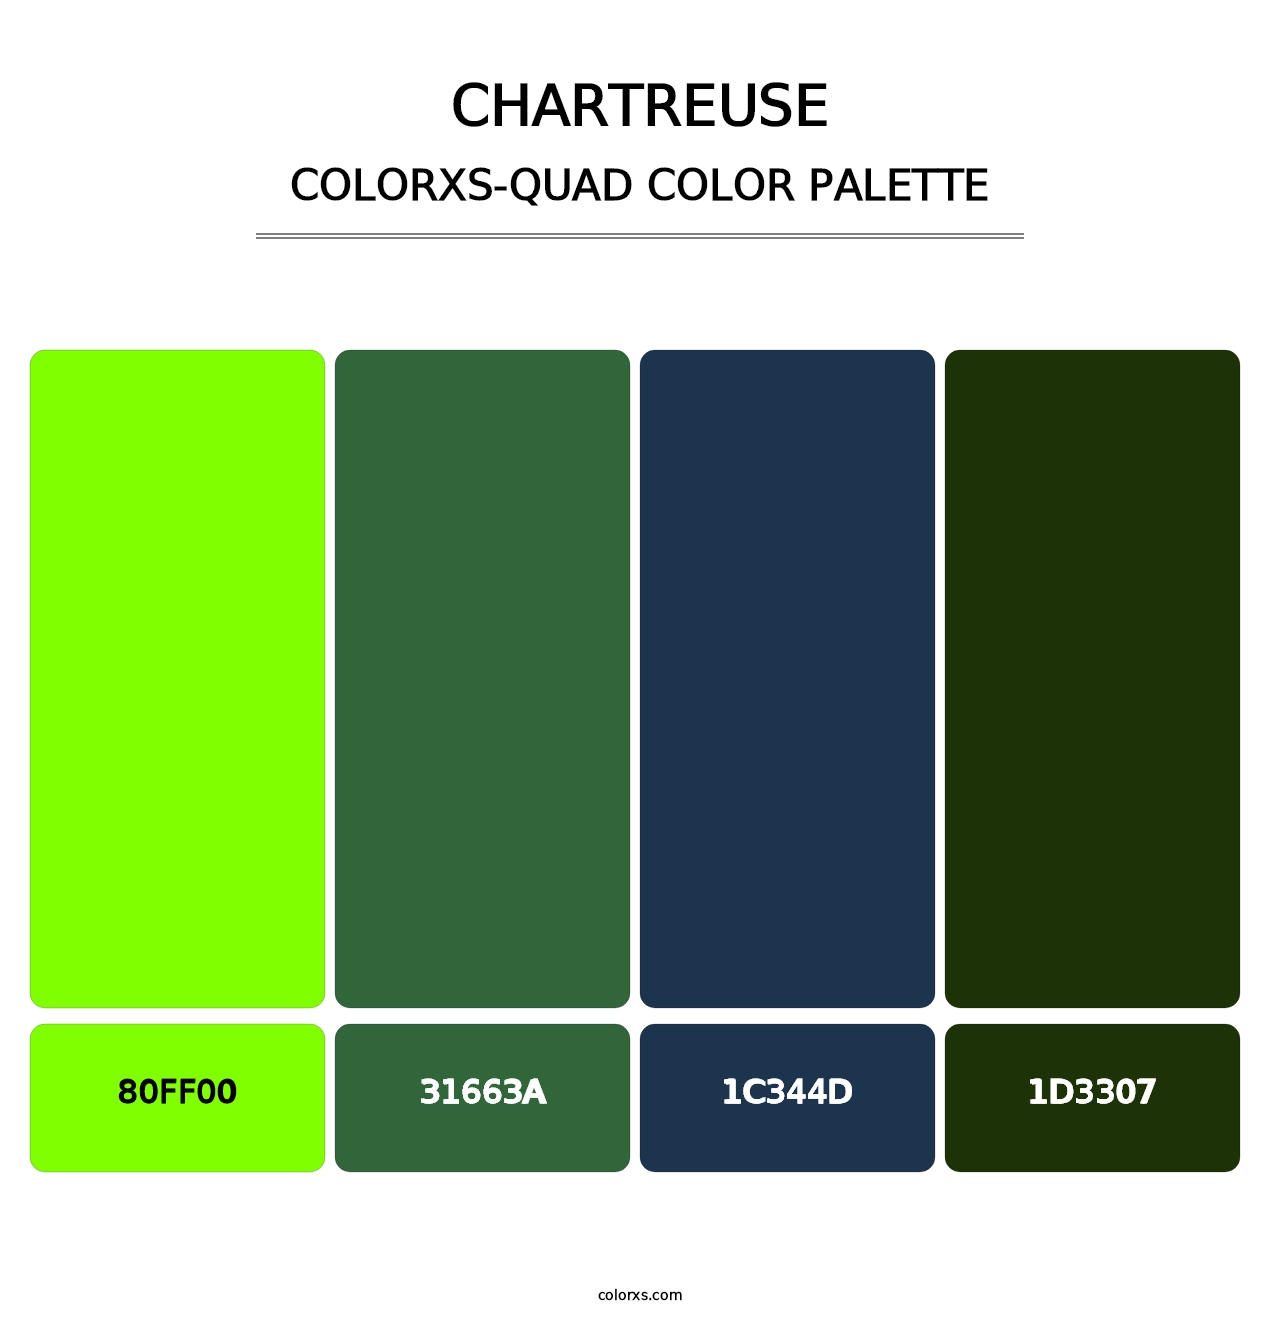 Chartreuse - Colorxs Quad Palette